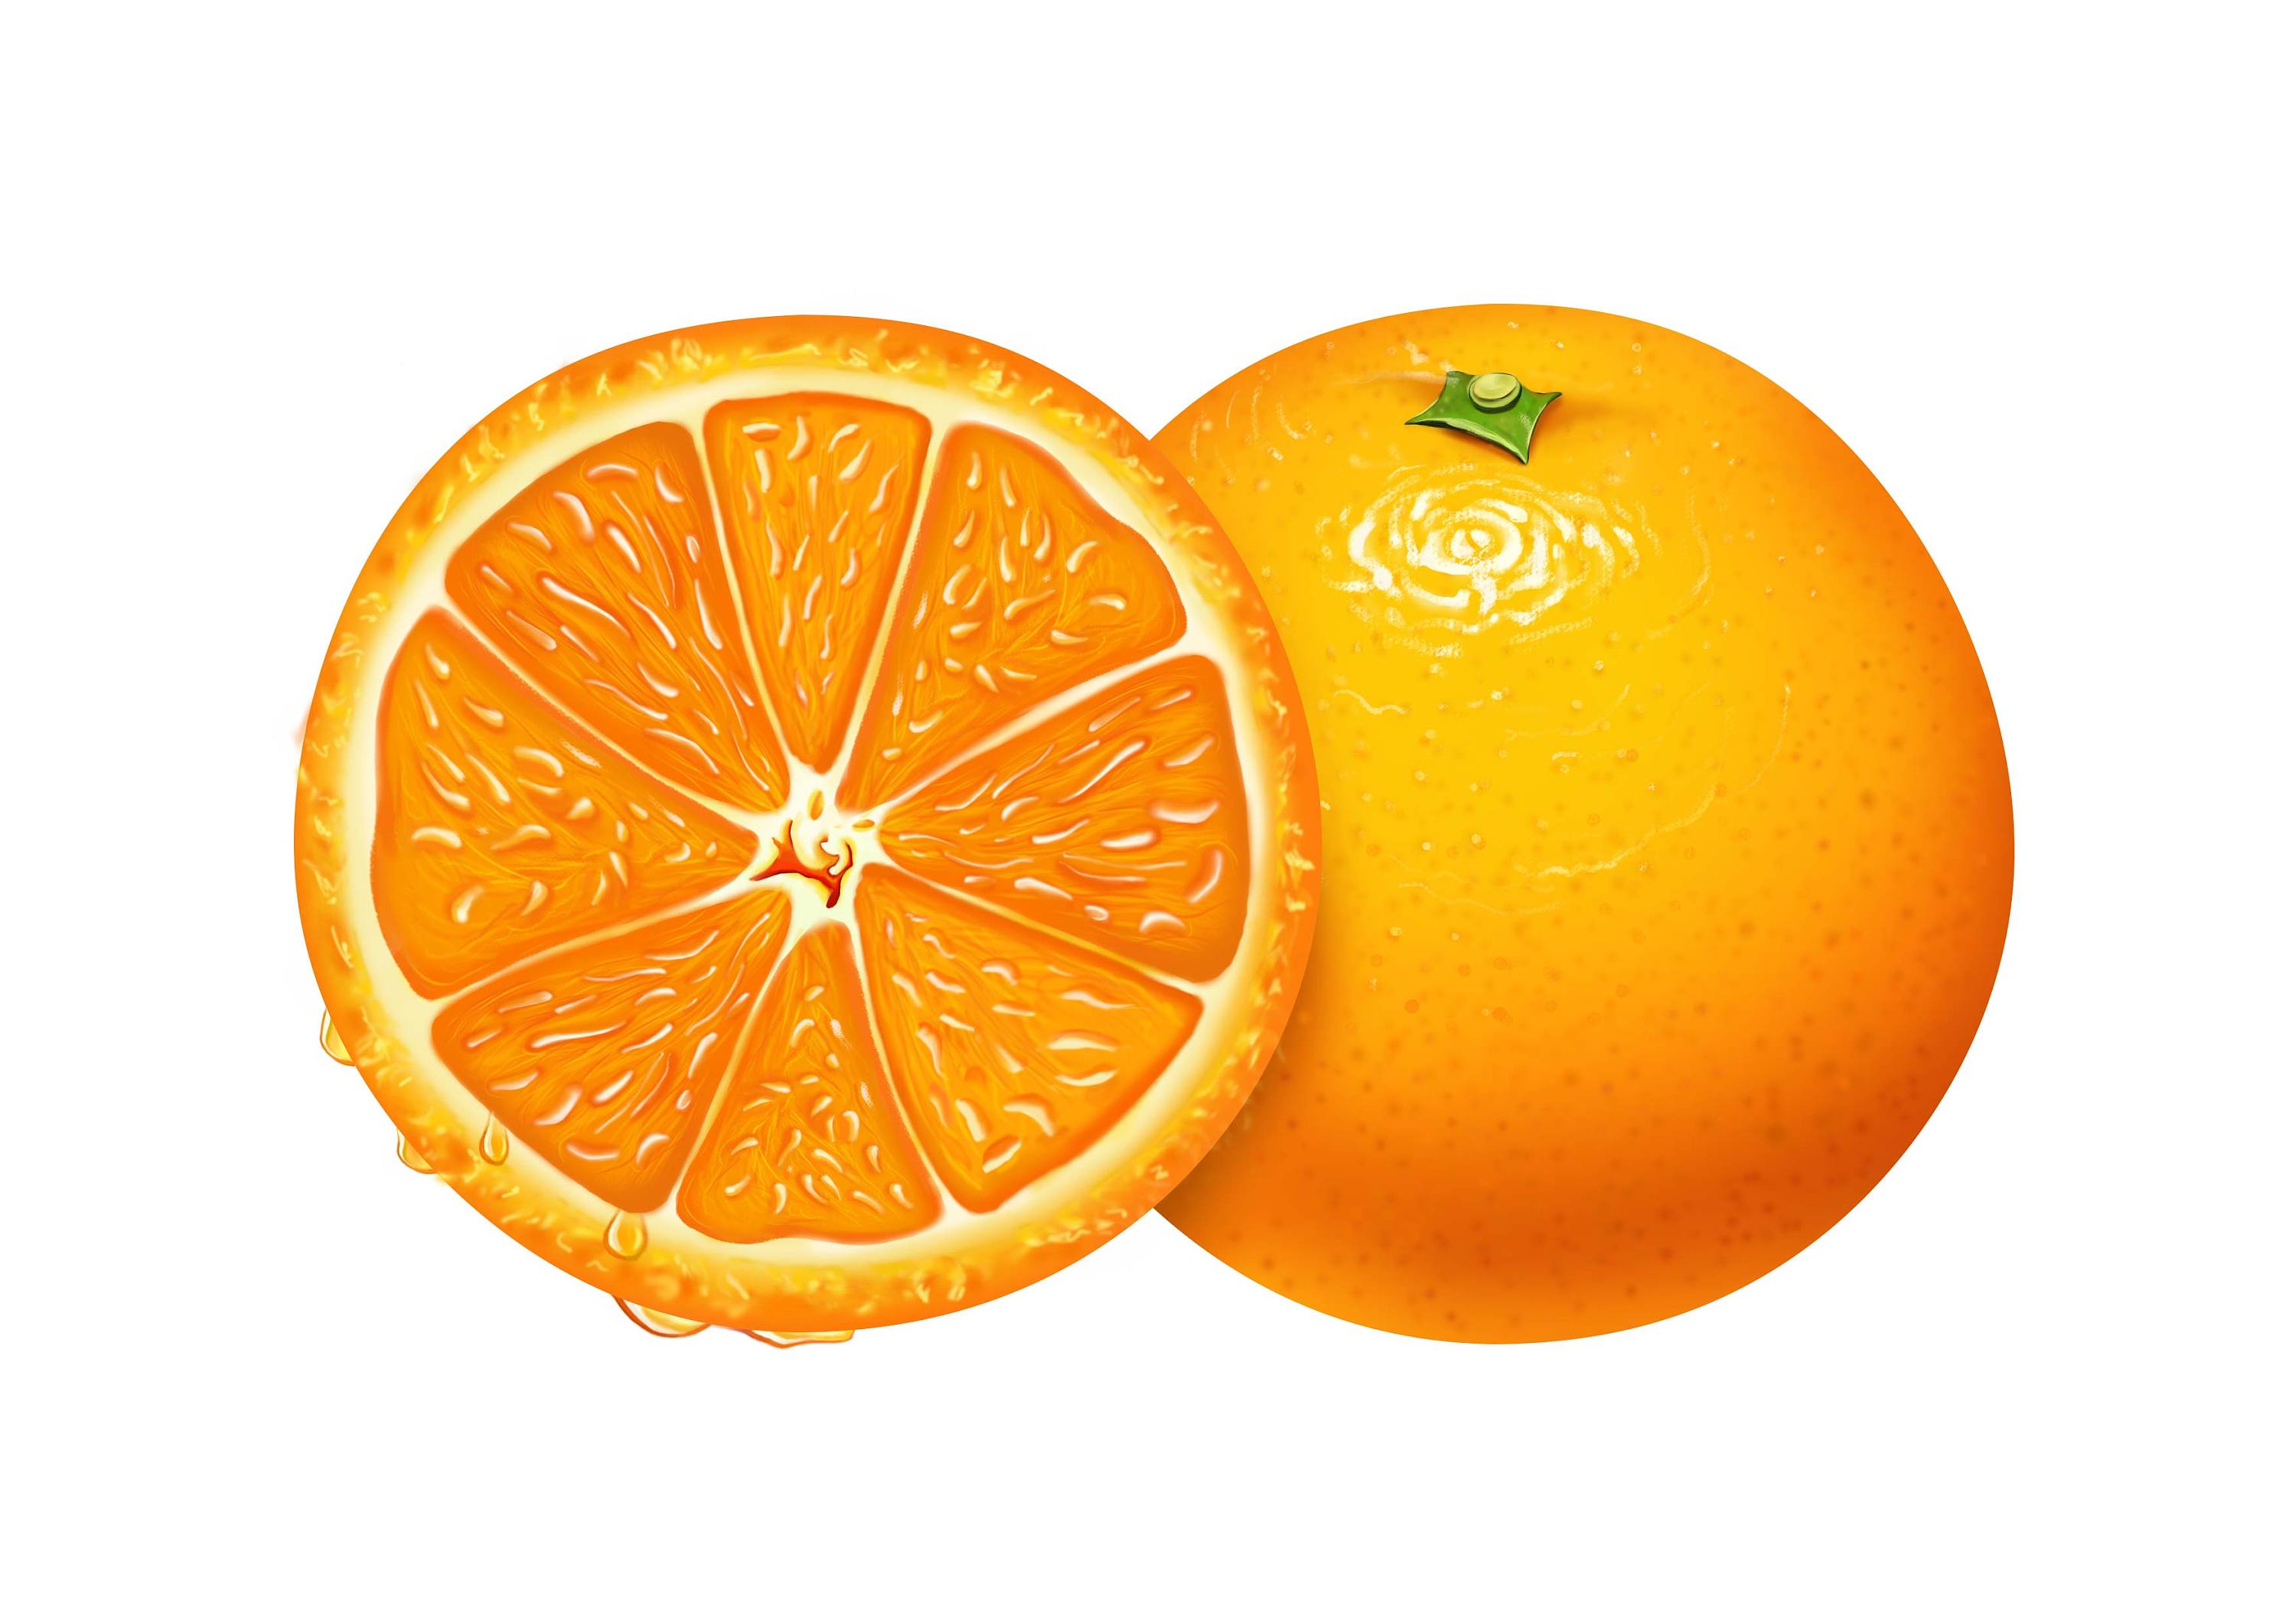 橙子拼盘花样,橙子拼盘_文秘苑图库